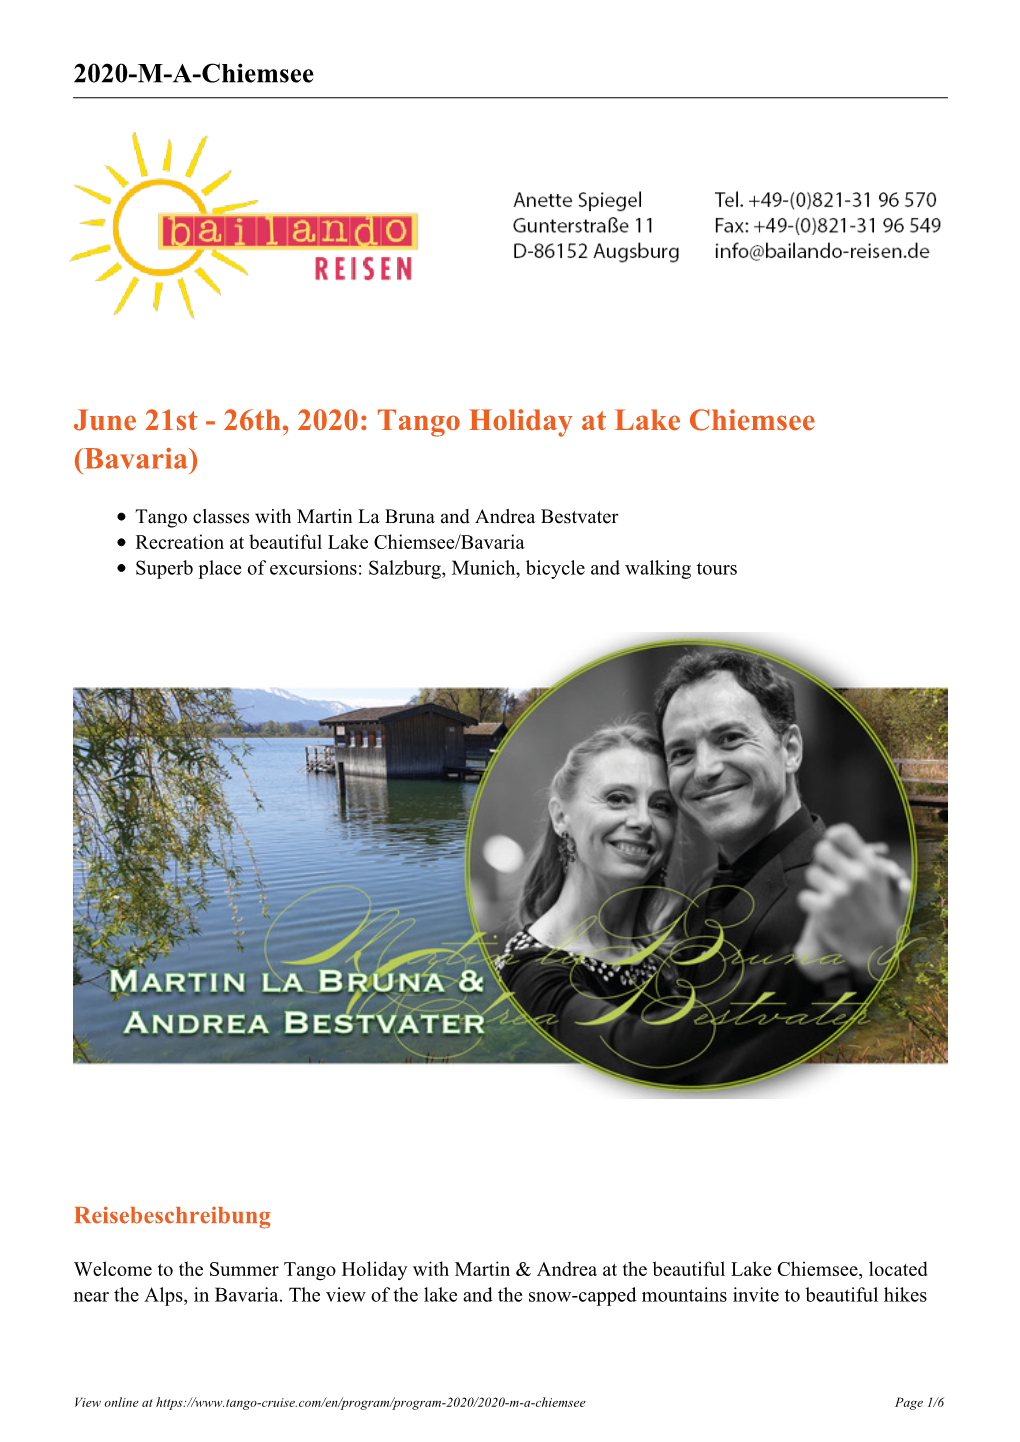 June 21St - 26Th, 2020: Tango Holiday at Lake Chiemsee (Bavaria)